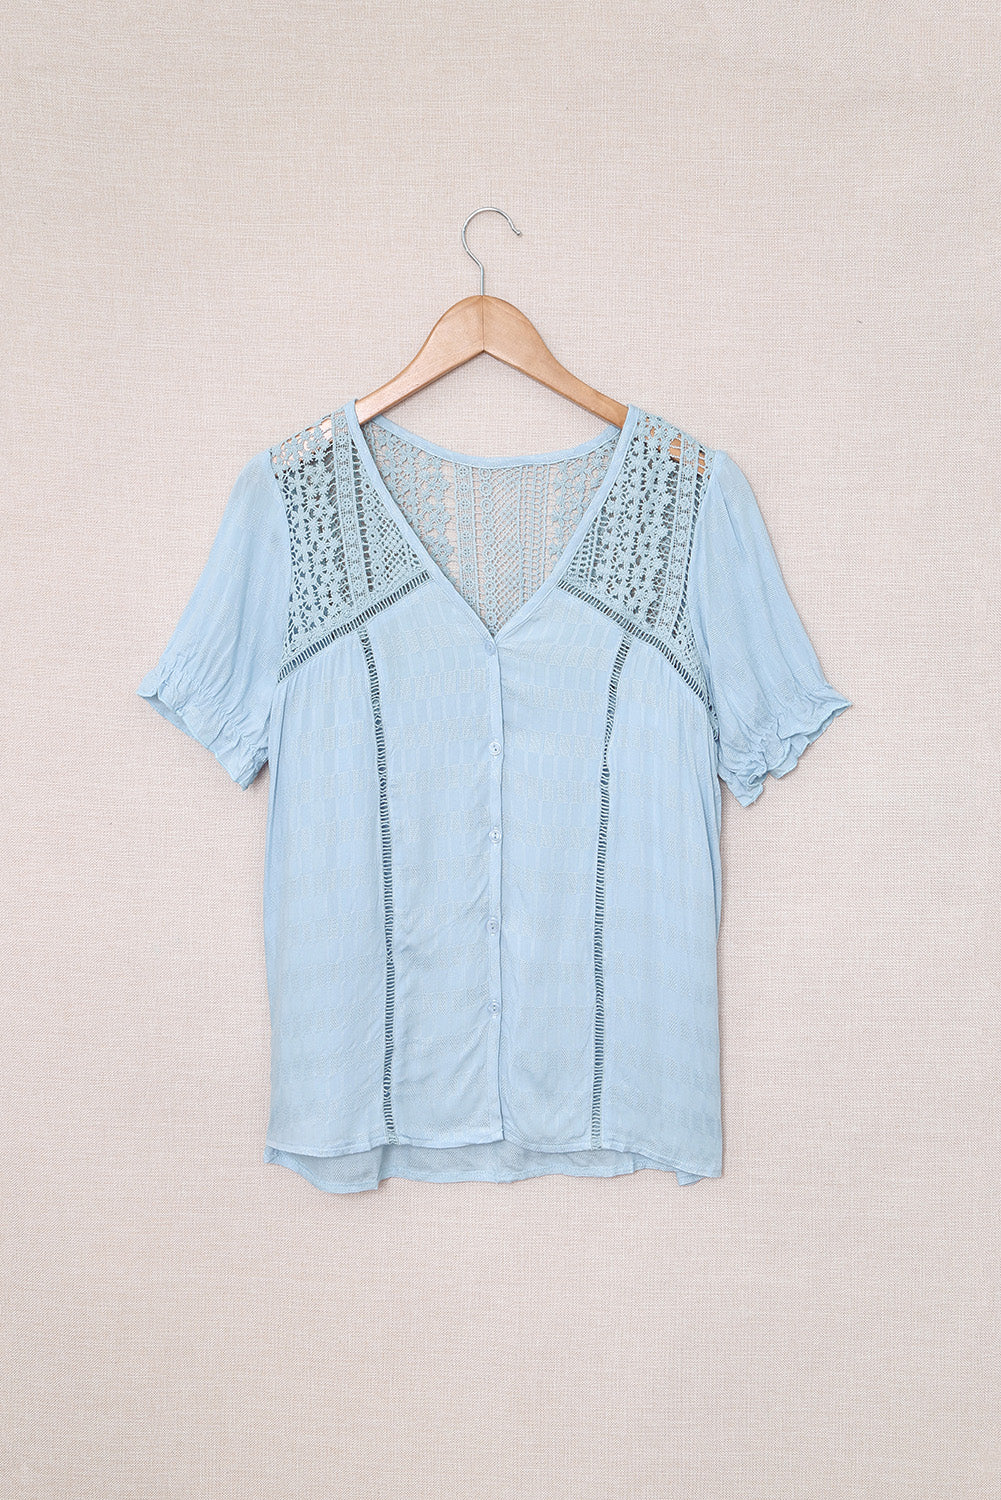 TEEK - Misty Blue Lace Button Up Short Sleeve Shirt TOPS TEEK Trend S  